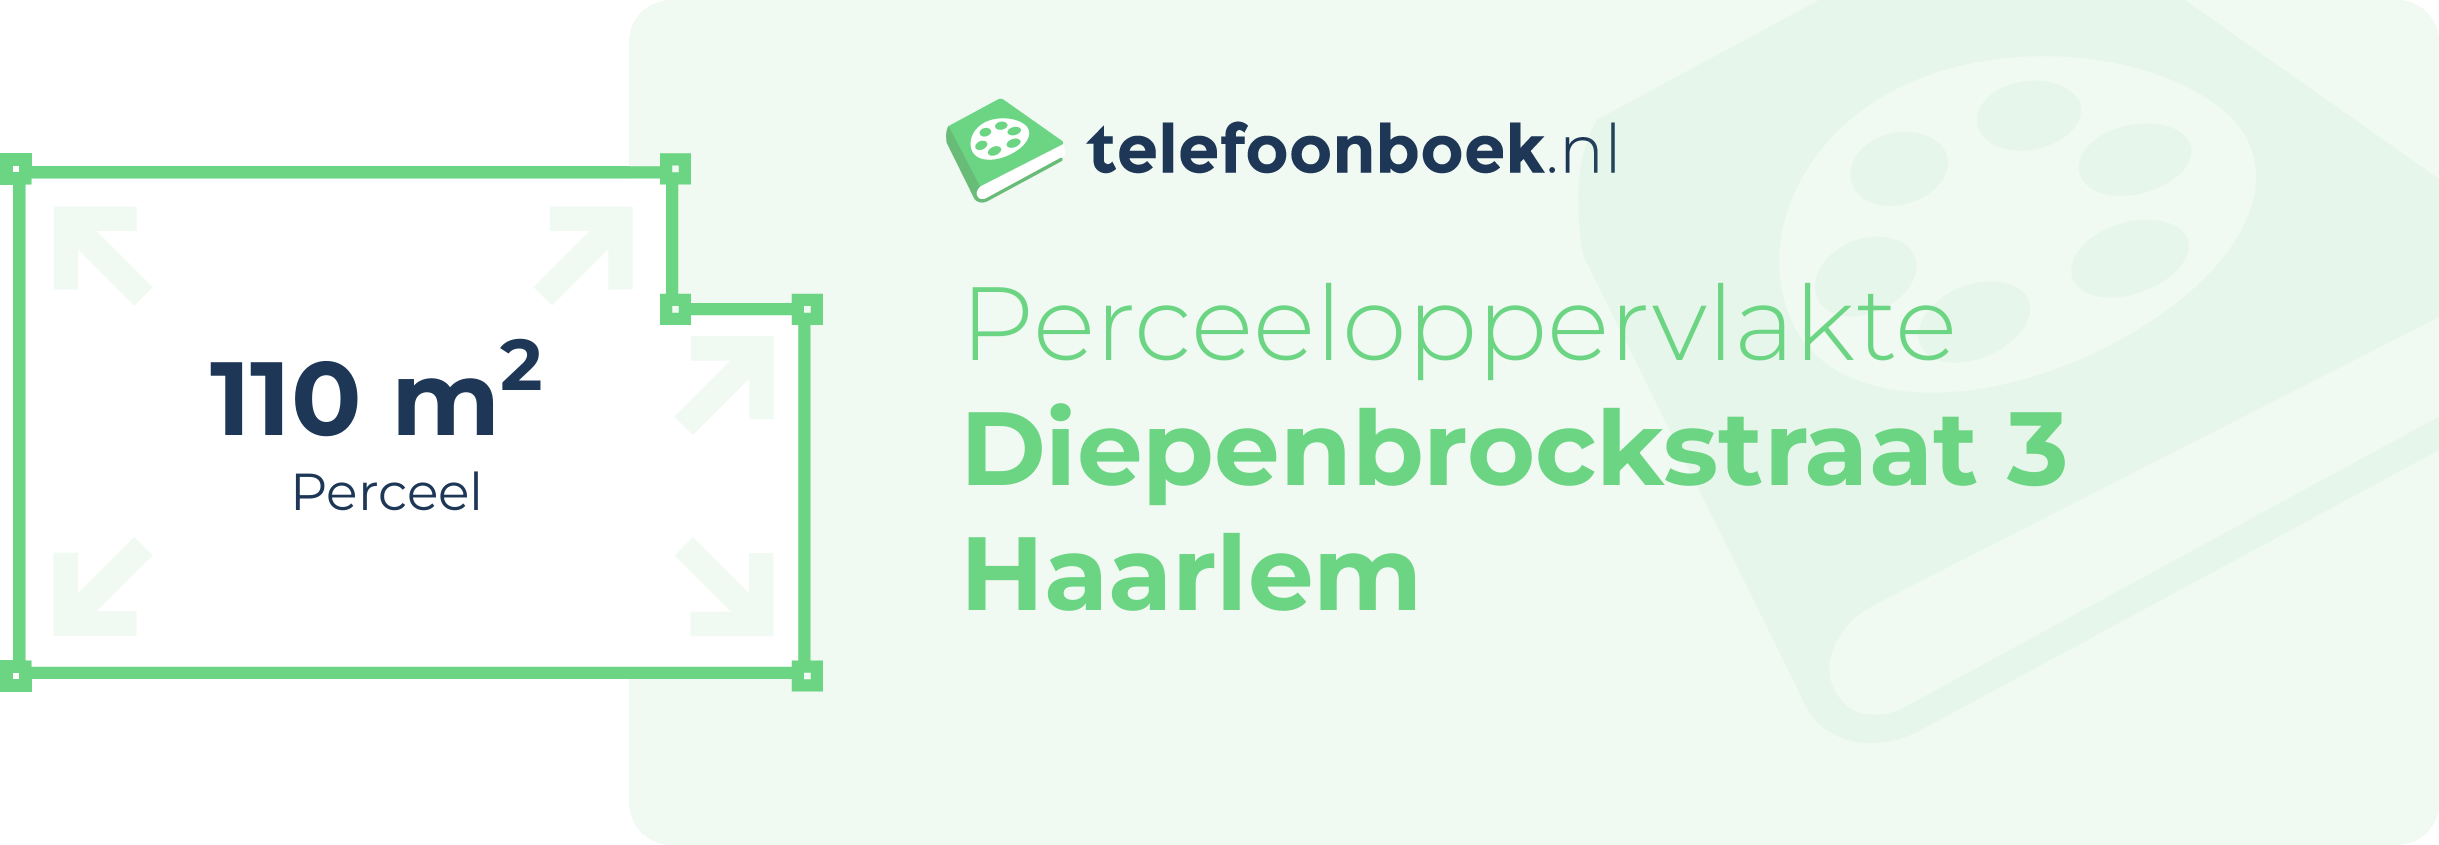 Perceeloppervlakte Diepenbrockstraat 3 Haarlem